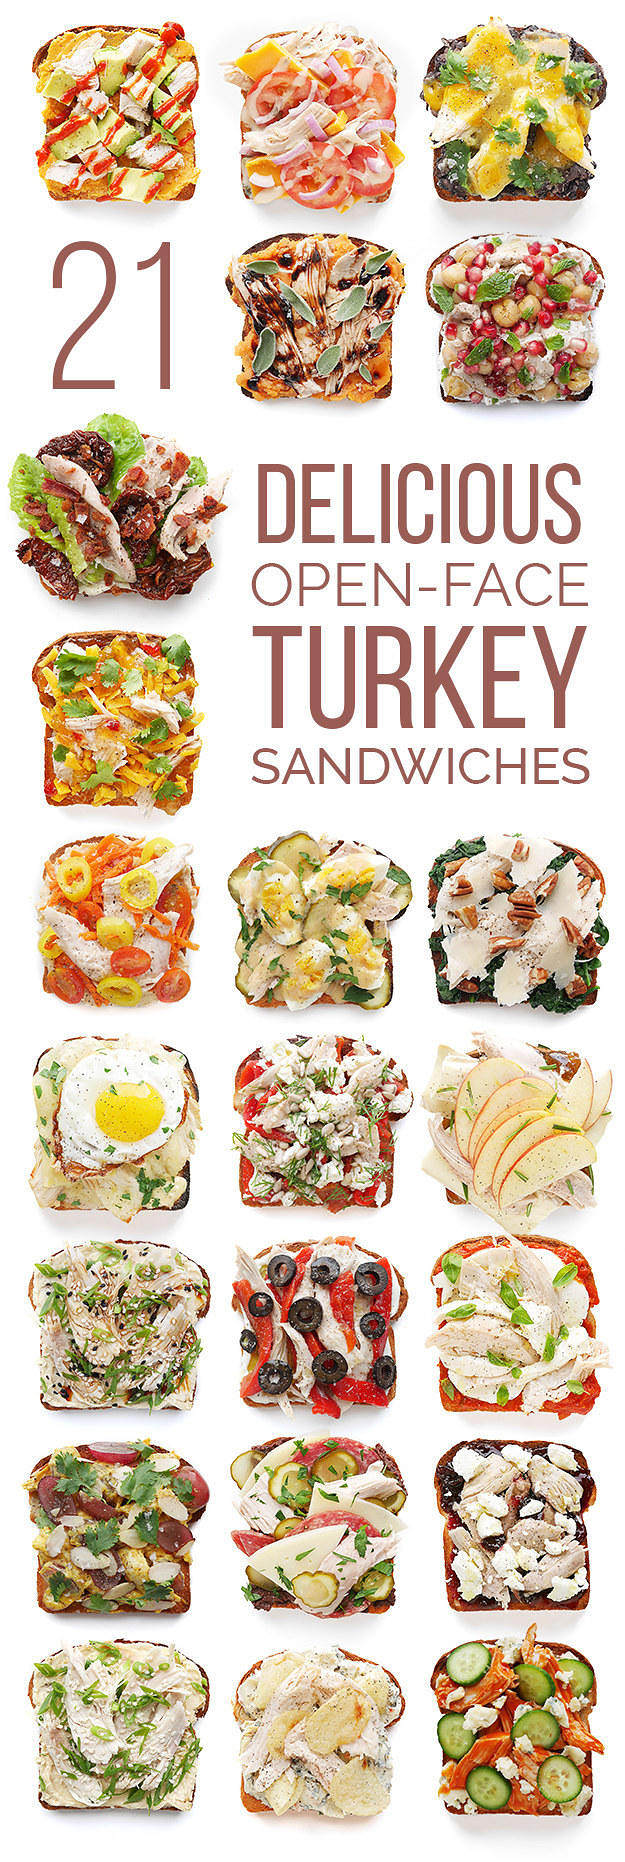 
Sandwich of turkey of 21 kinds of open mode is delicate